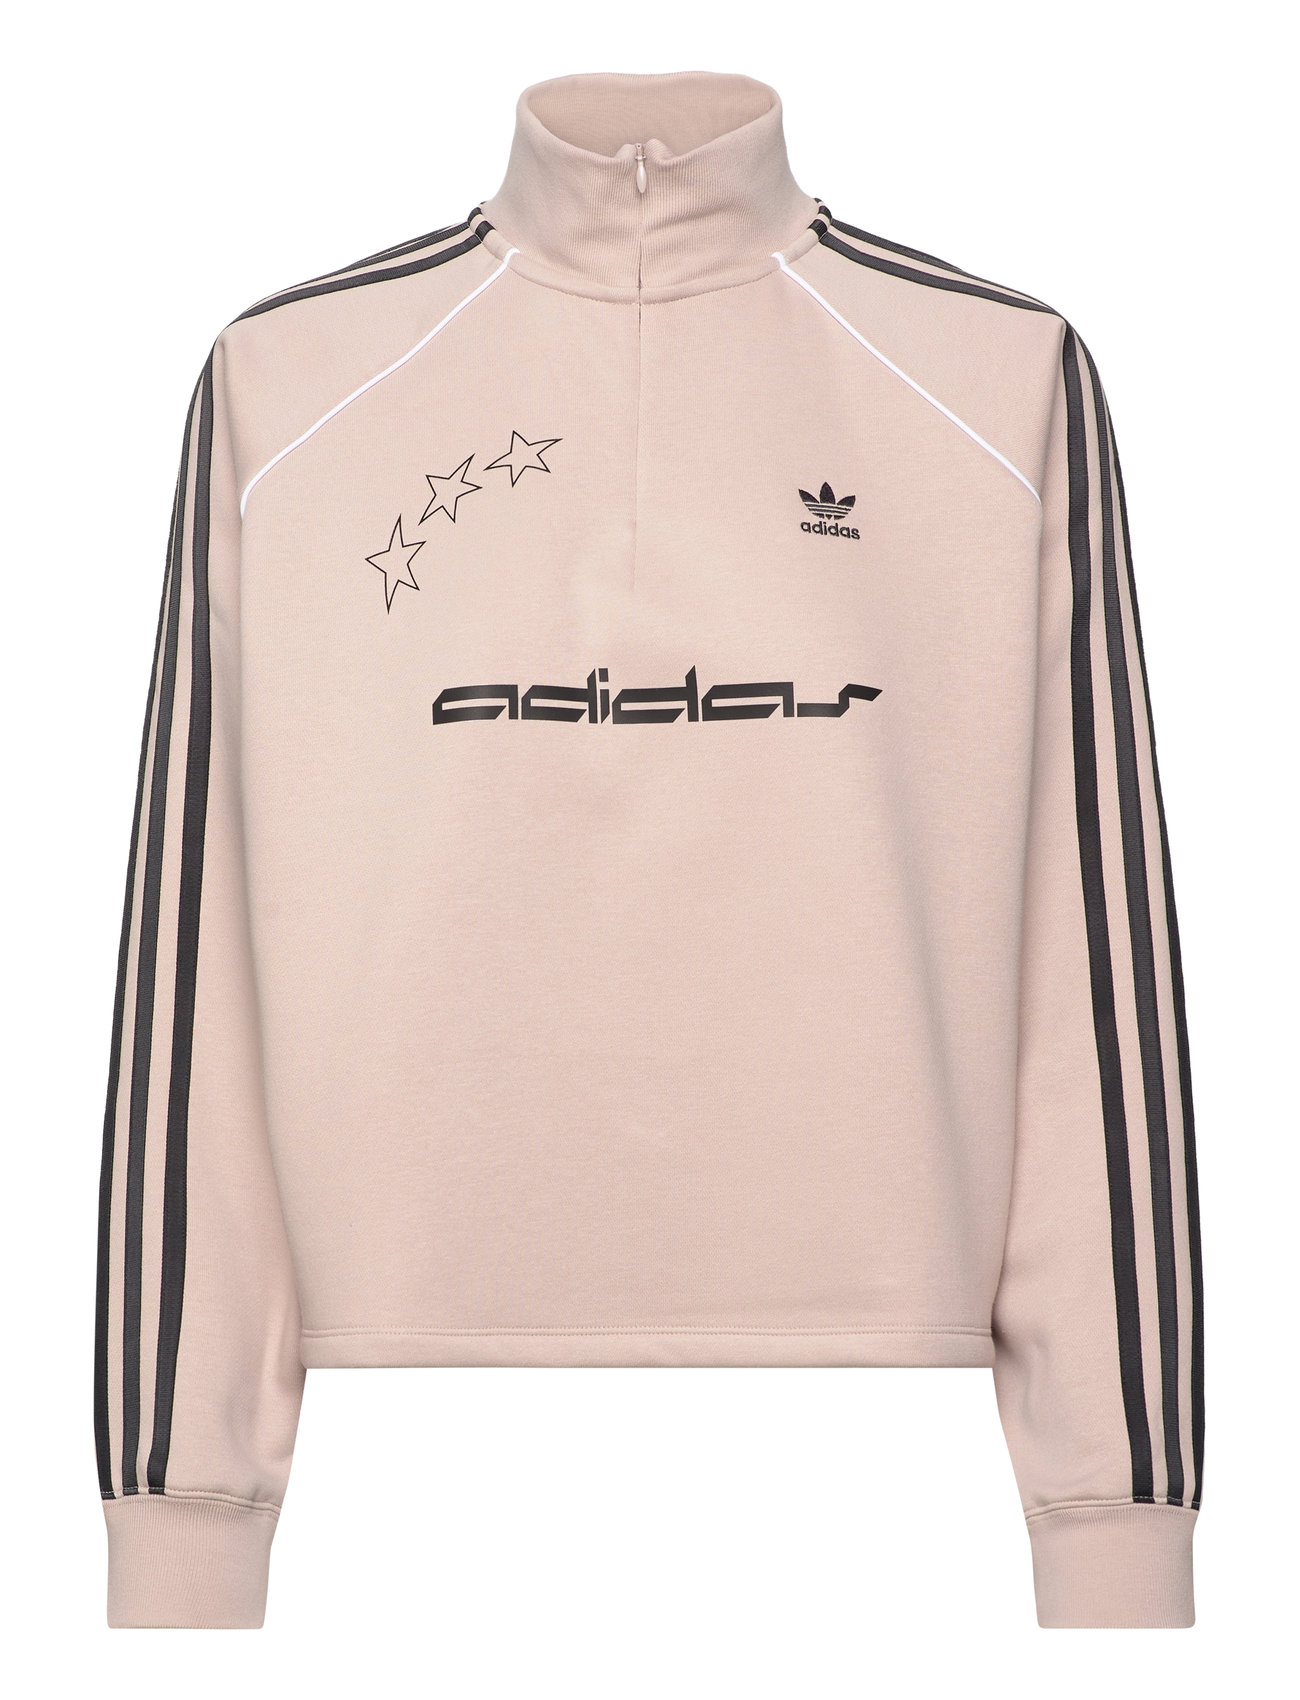 Fr Hz Swtshirt Sport Sweatshirts & Hoodies Sweatshirts Beige Adidas Originals